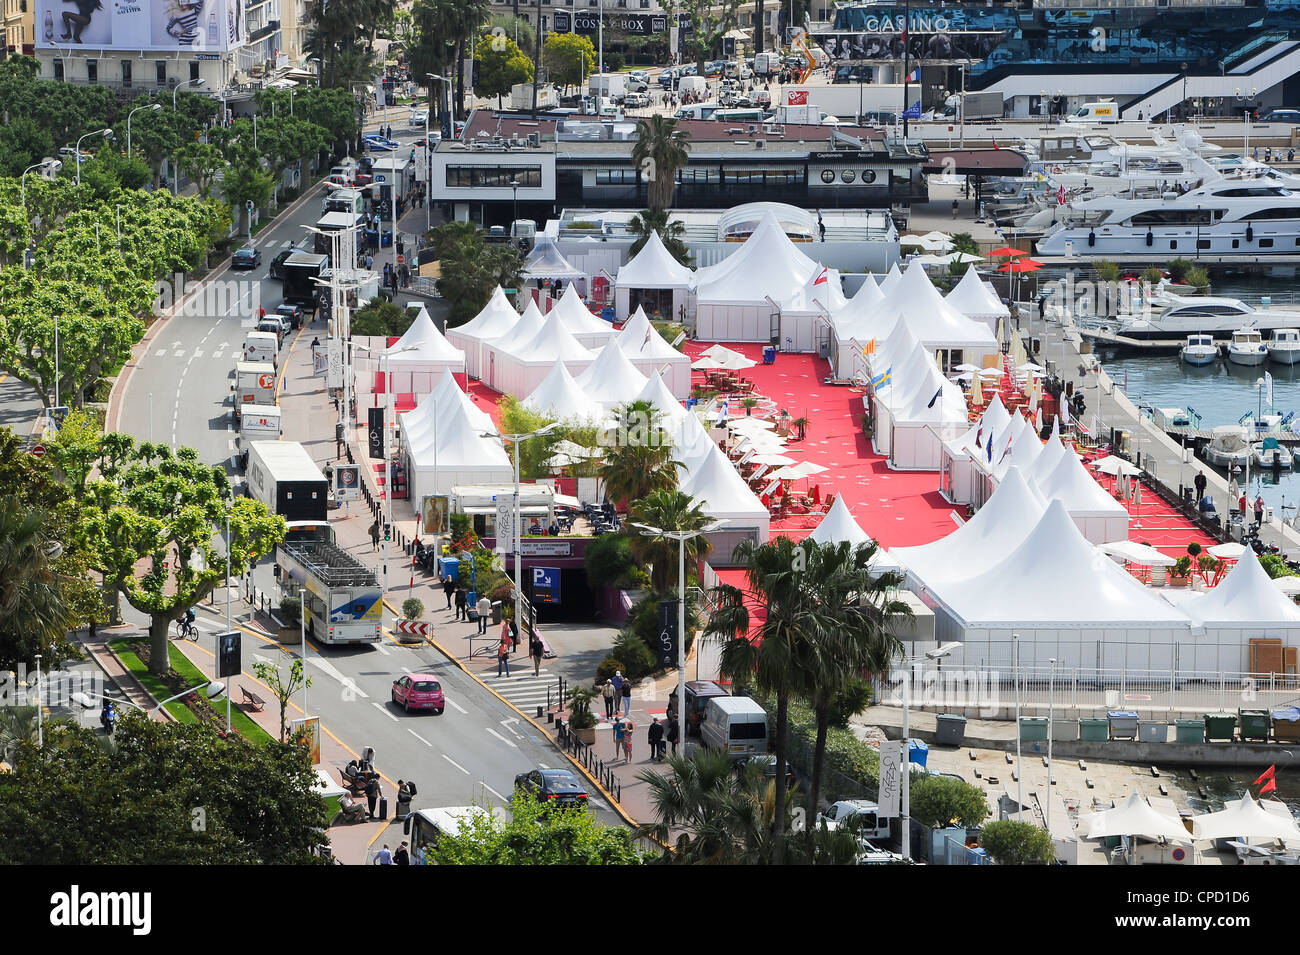 Vista general de la 65ª edición de festival internacional de cine de Cannes, en el sur de Francia. Foto de stock